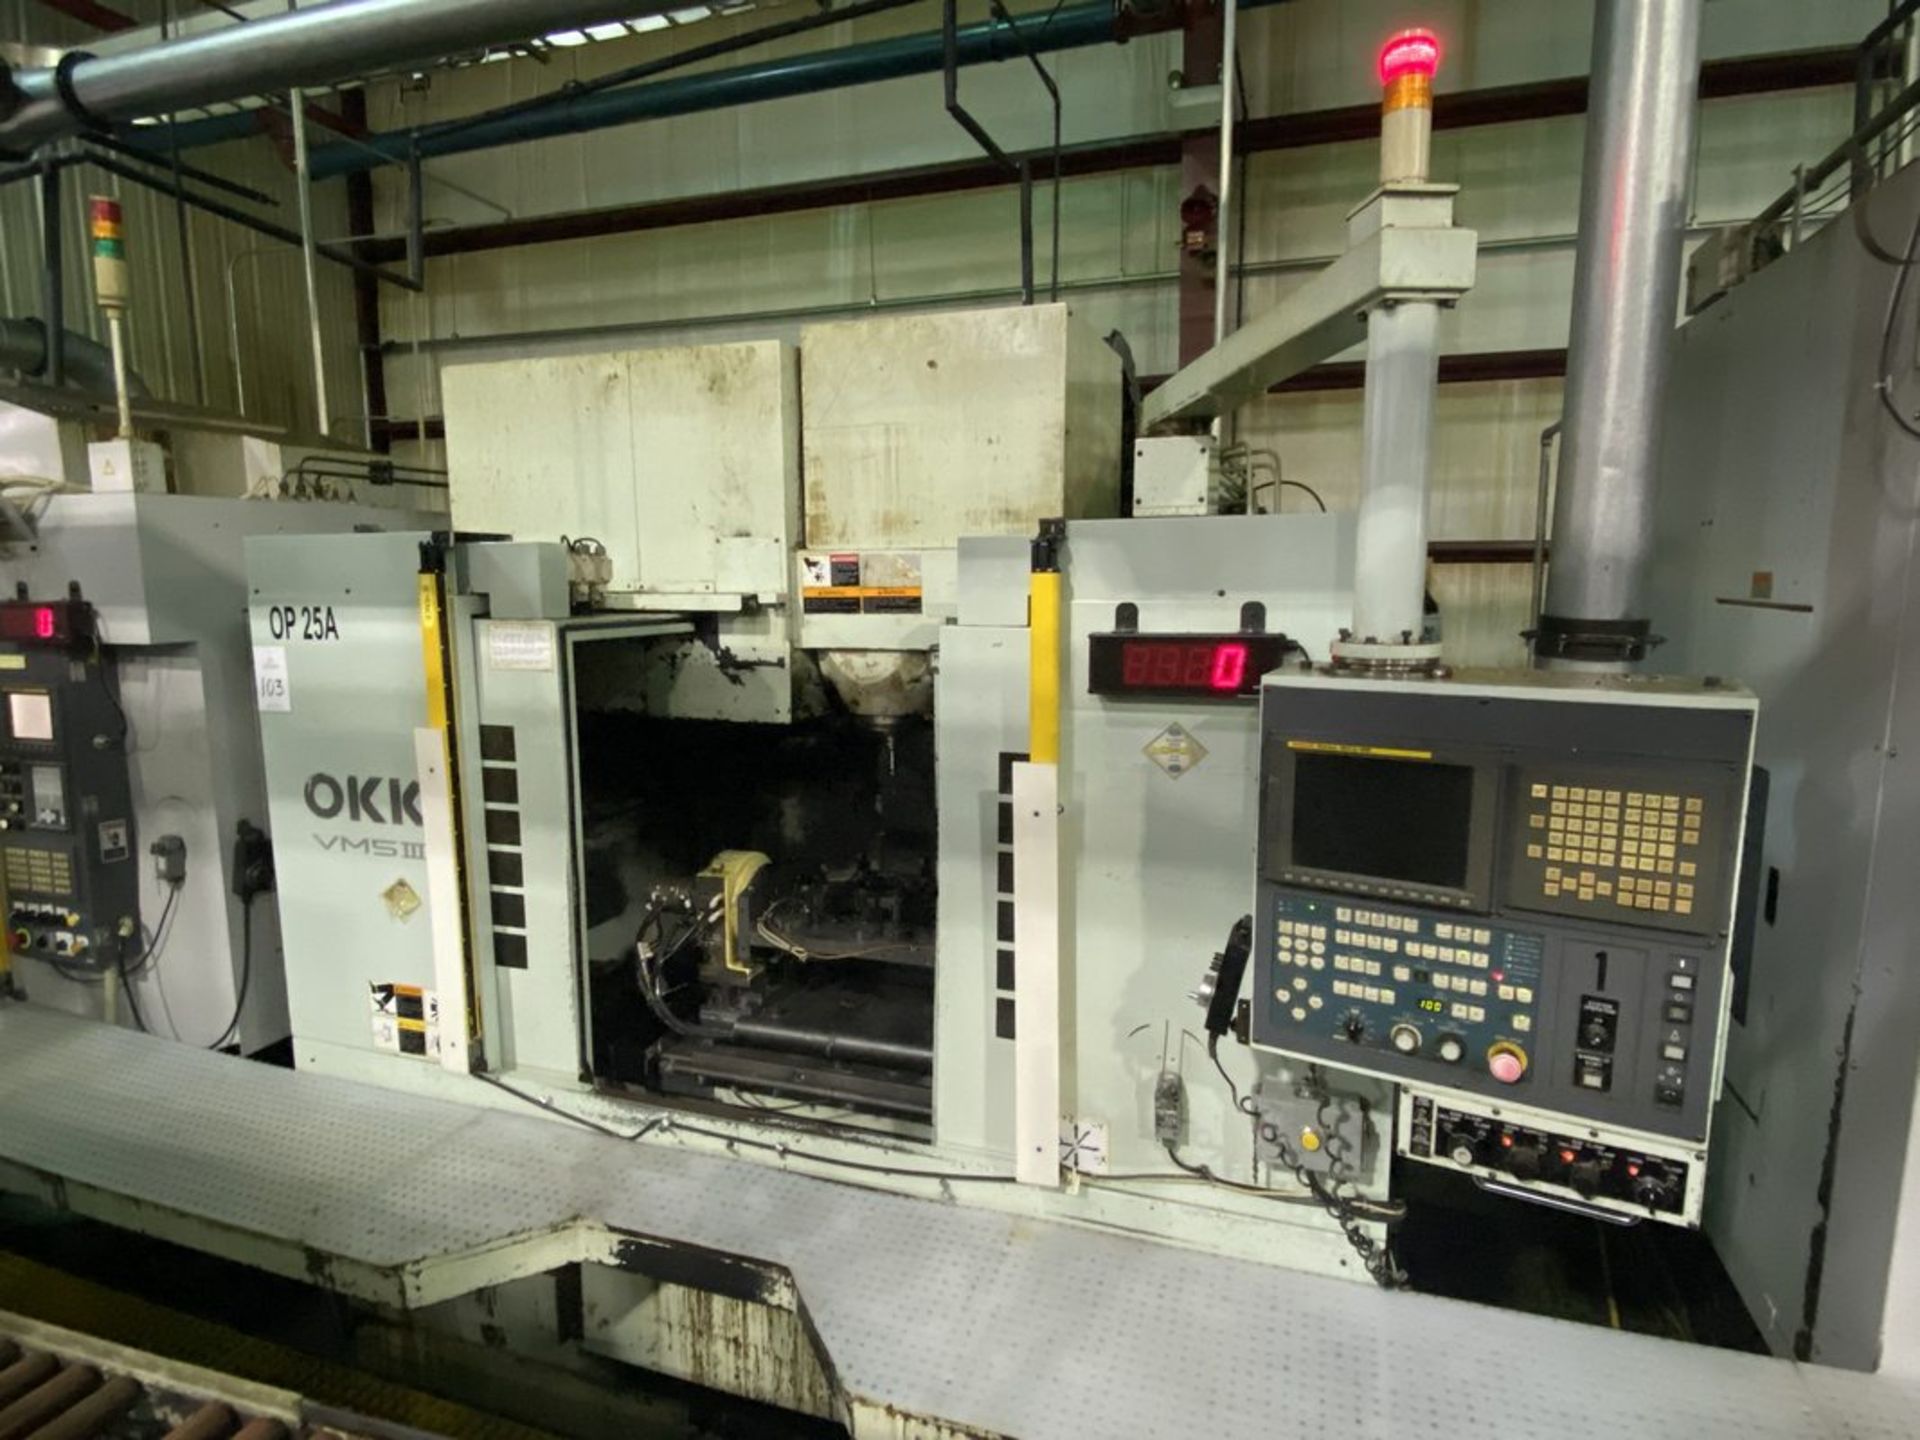 OKK VM5-III 4-Axis CNC Vertical Machining Center